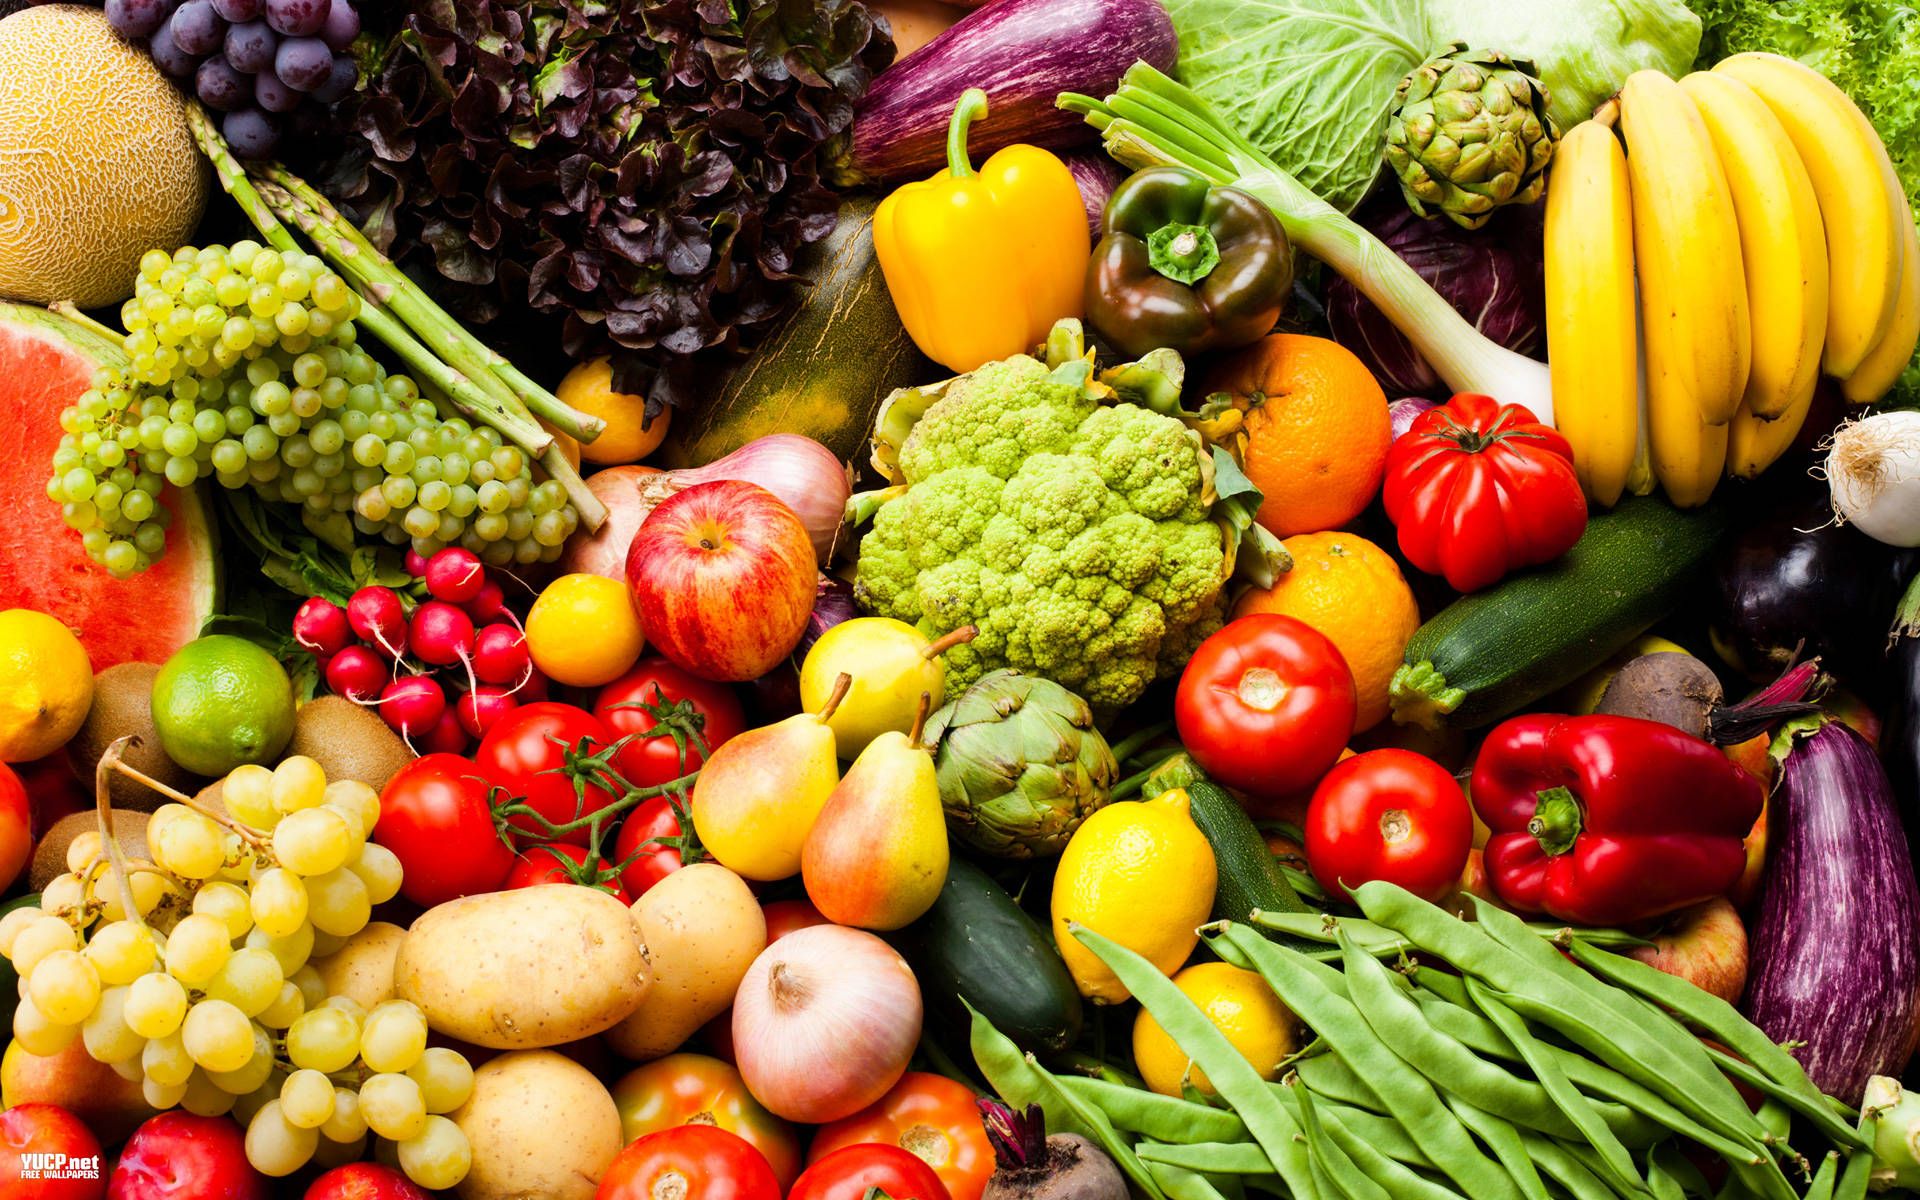 Fruits & Vegetables wallpaper, Food, HQ Fruits & Vegetables pictureK Wallpaper 2019